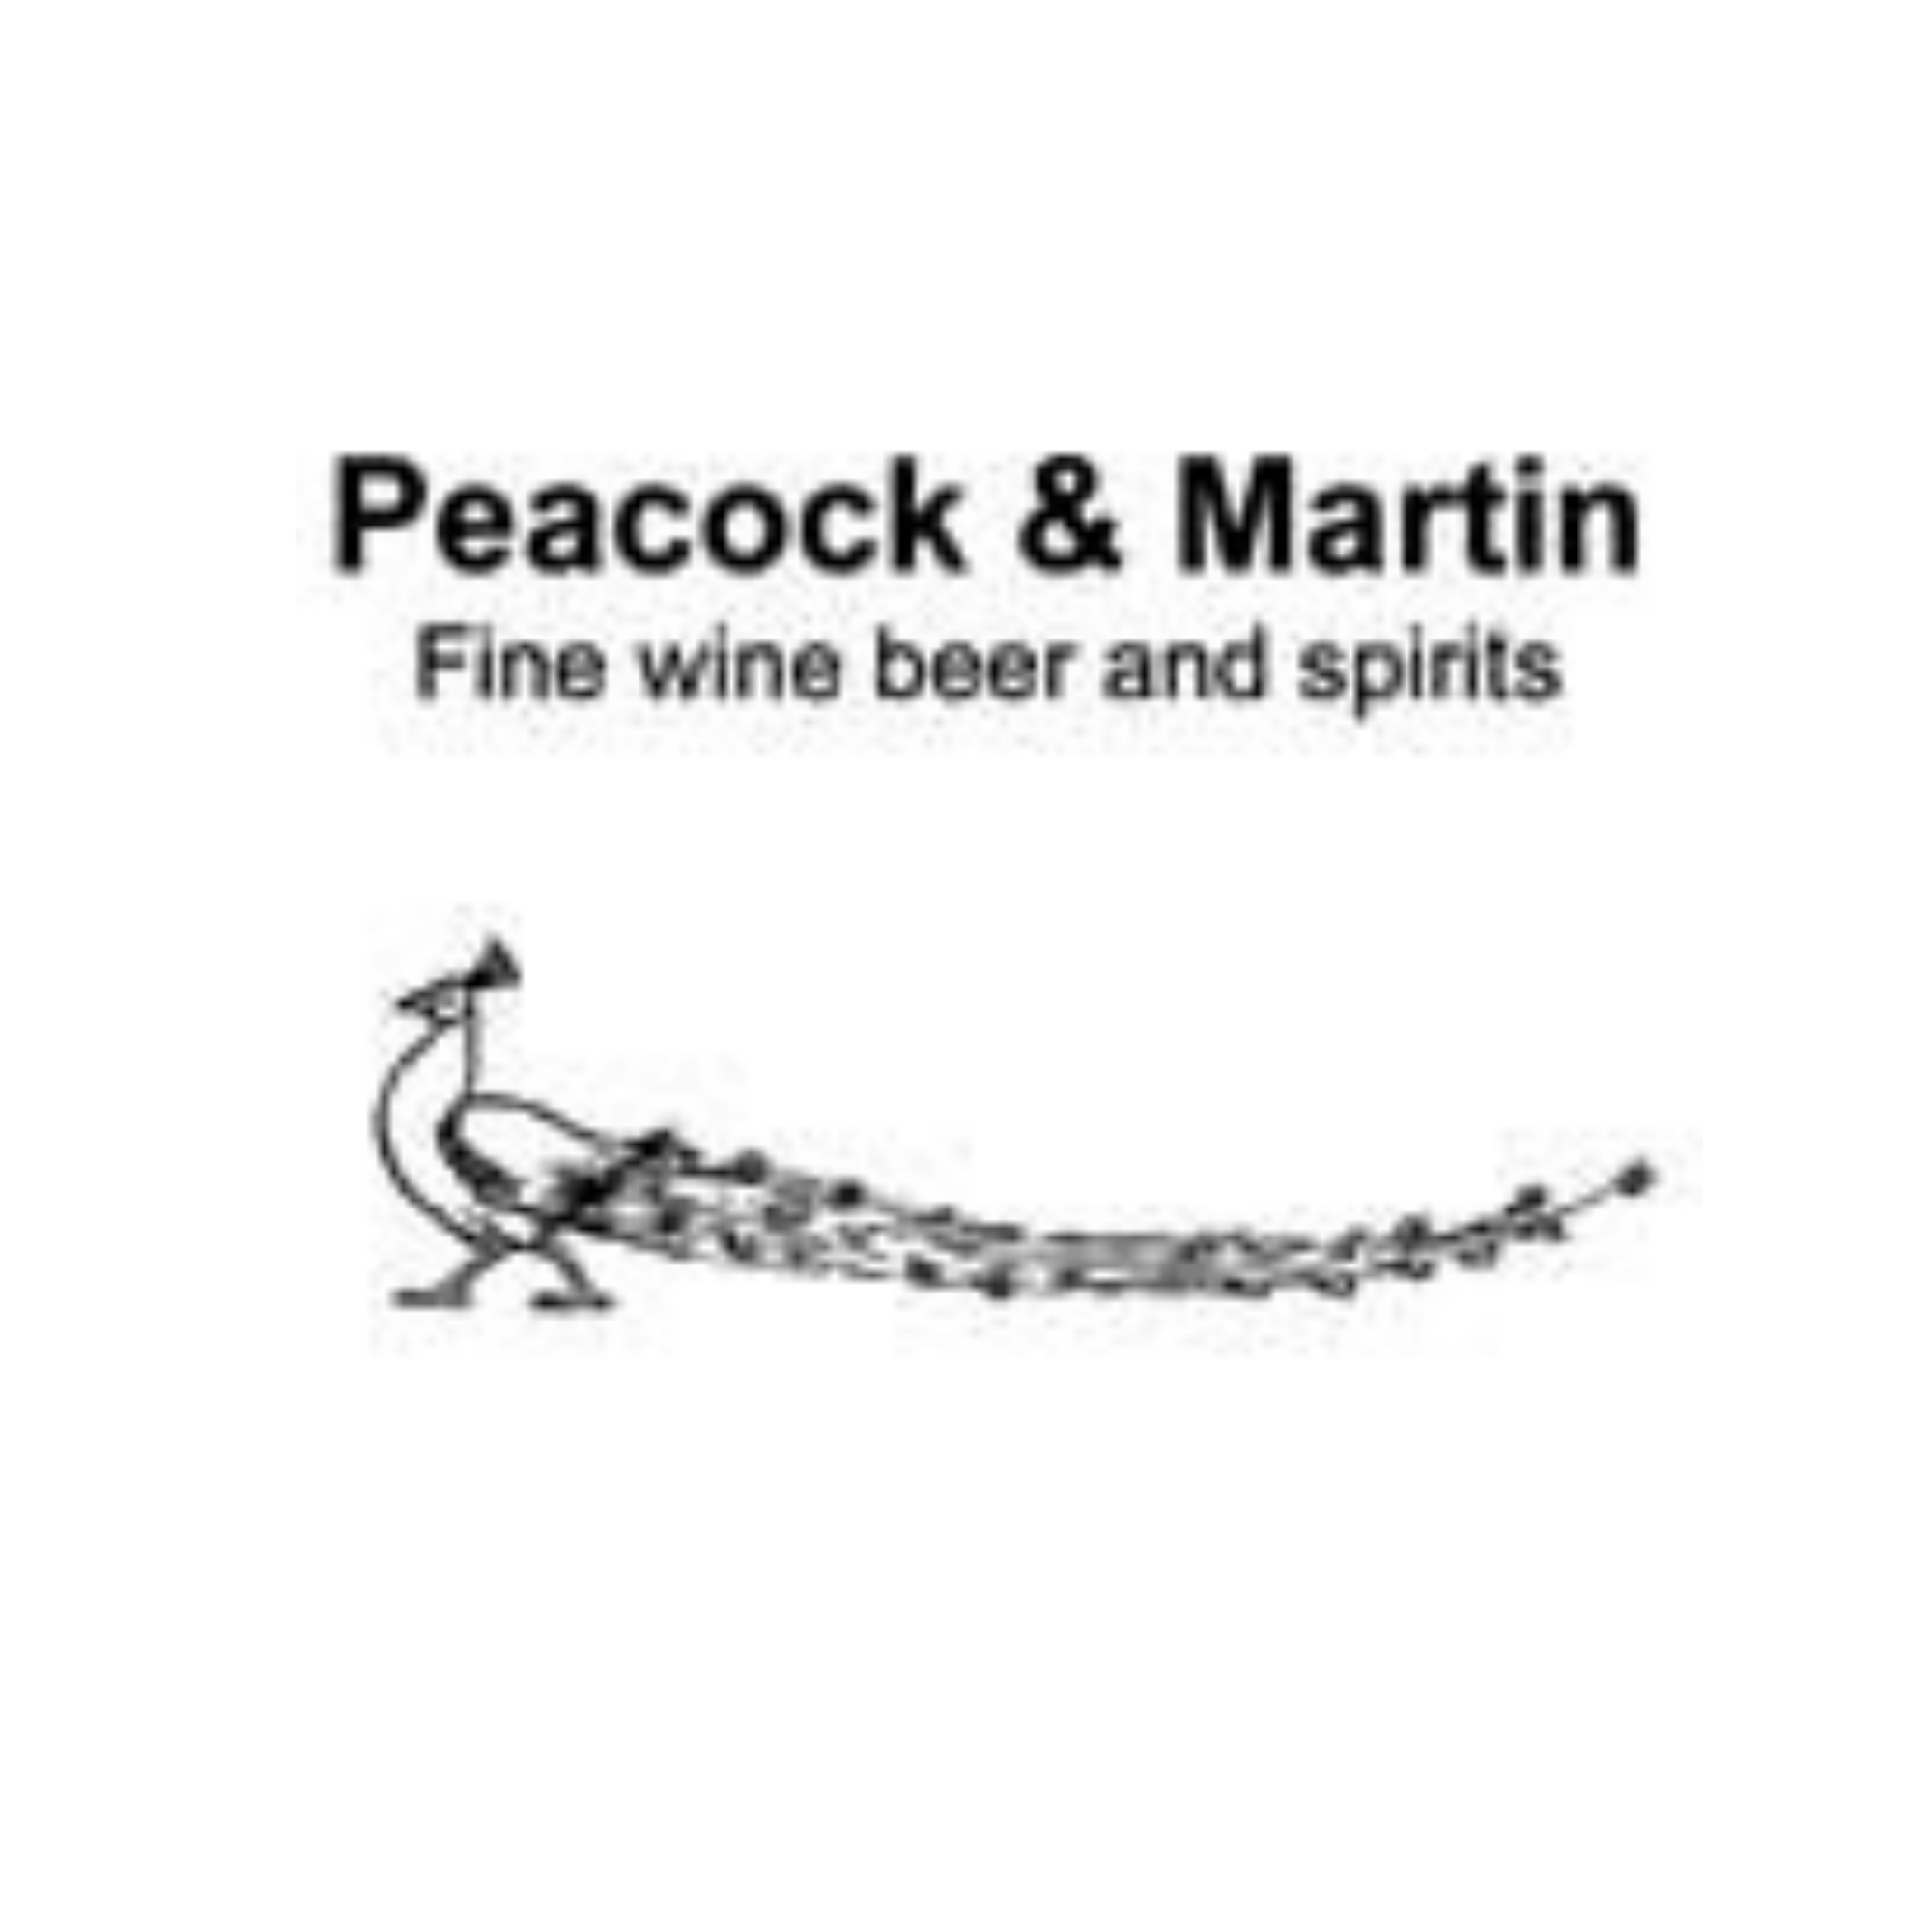 Peacock & Martin